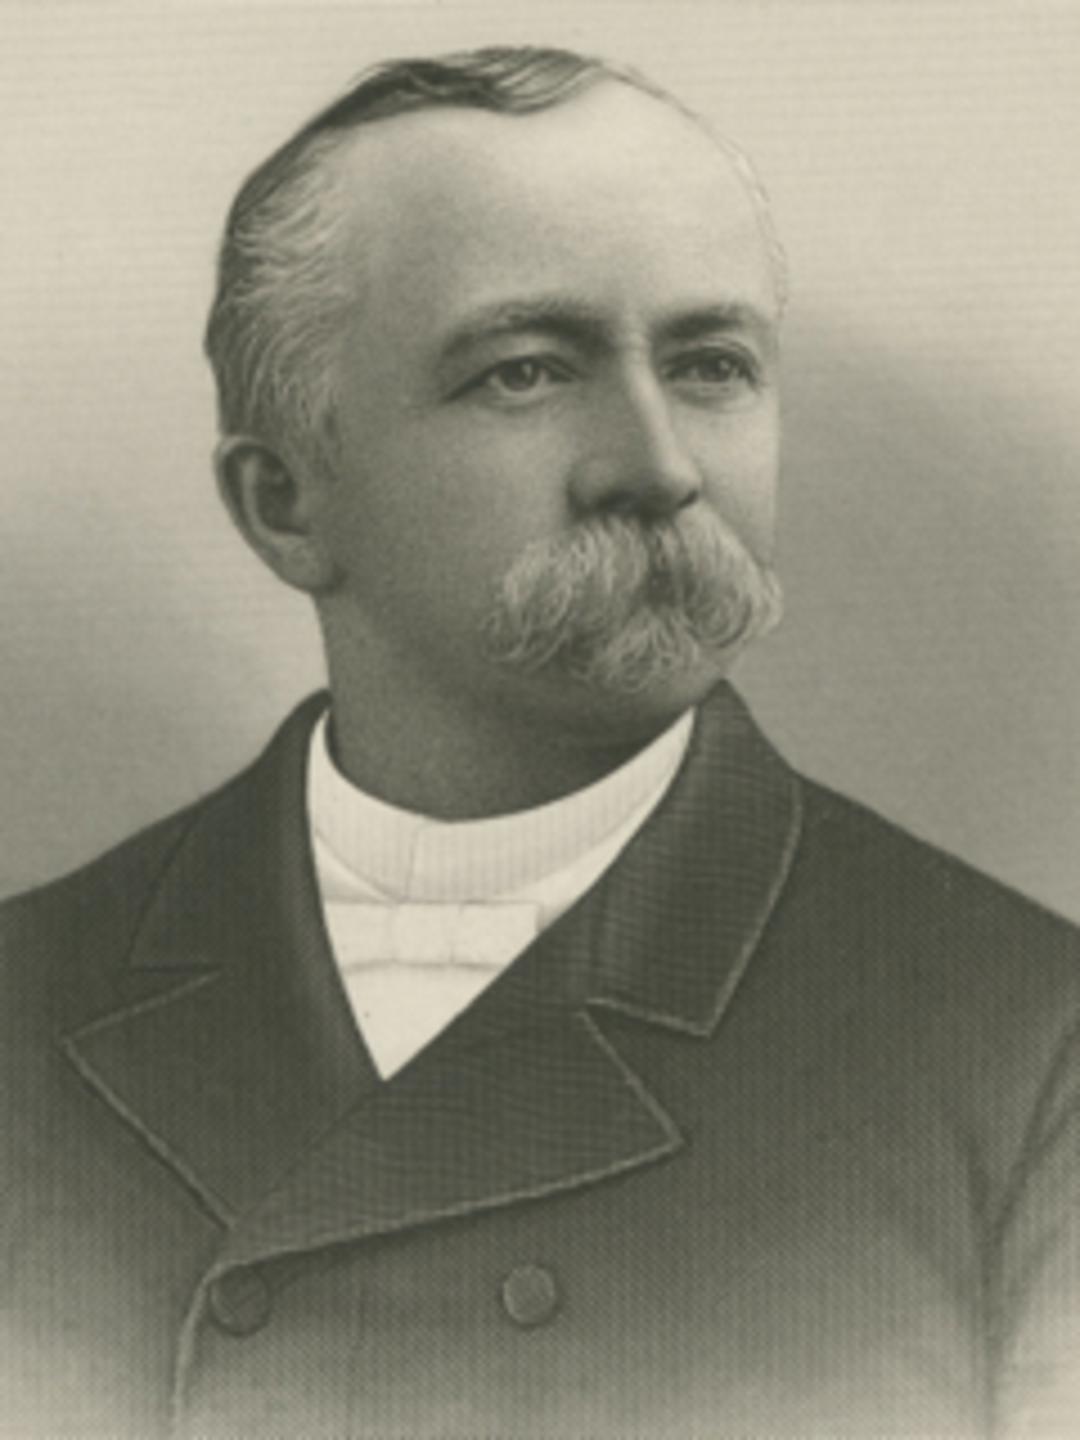 Angus Munn Cannon (1834 - 1915)